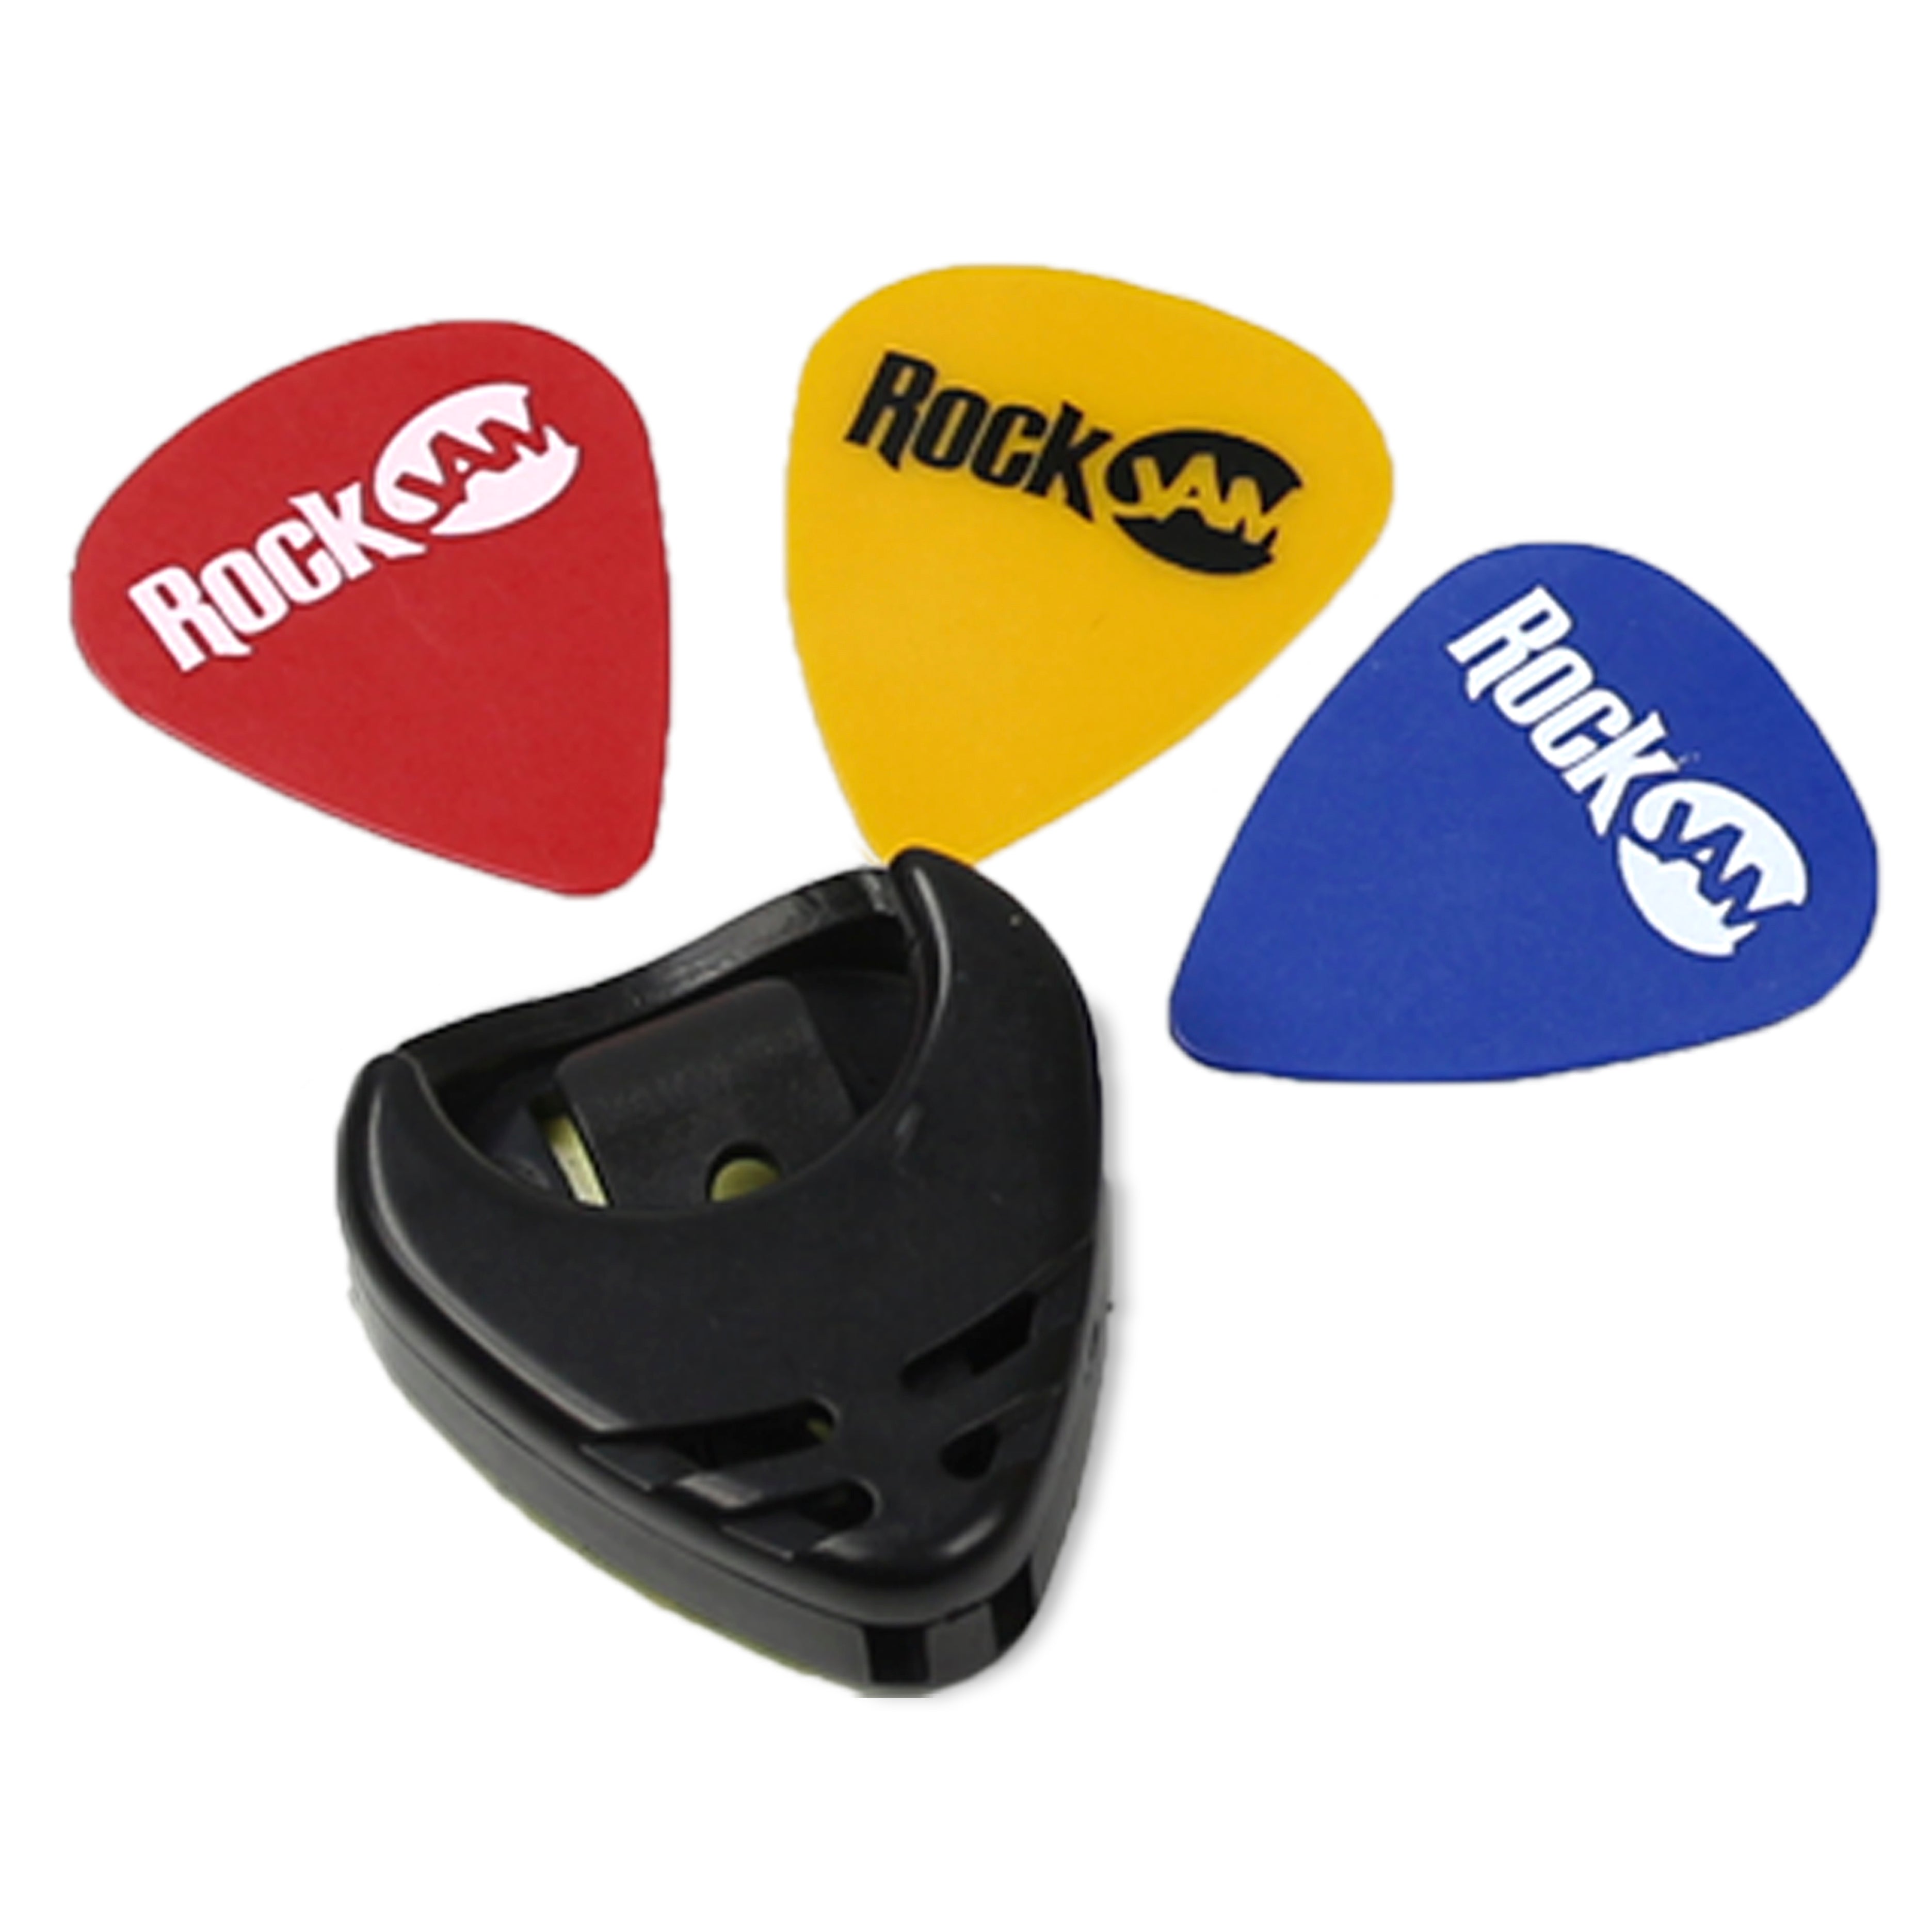 RockJam W-103 FS Acoustic Guitar Package Blu